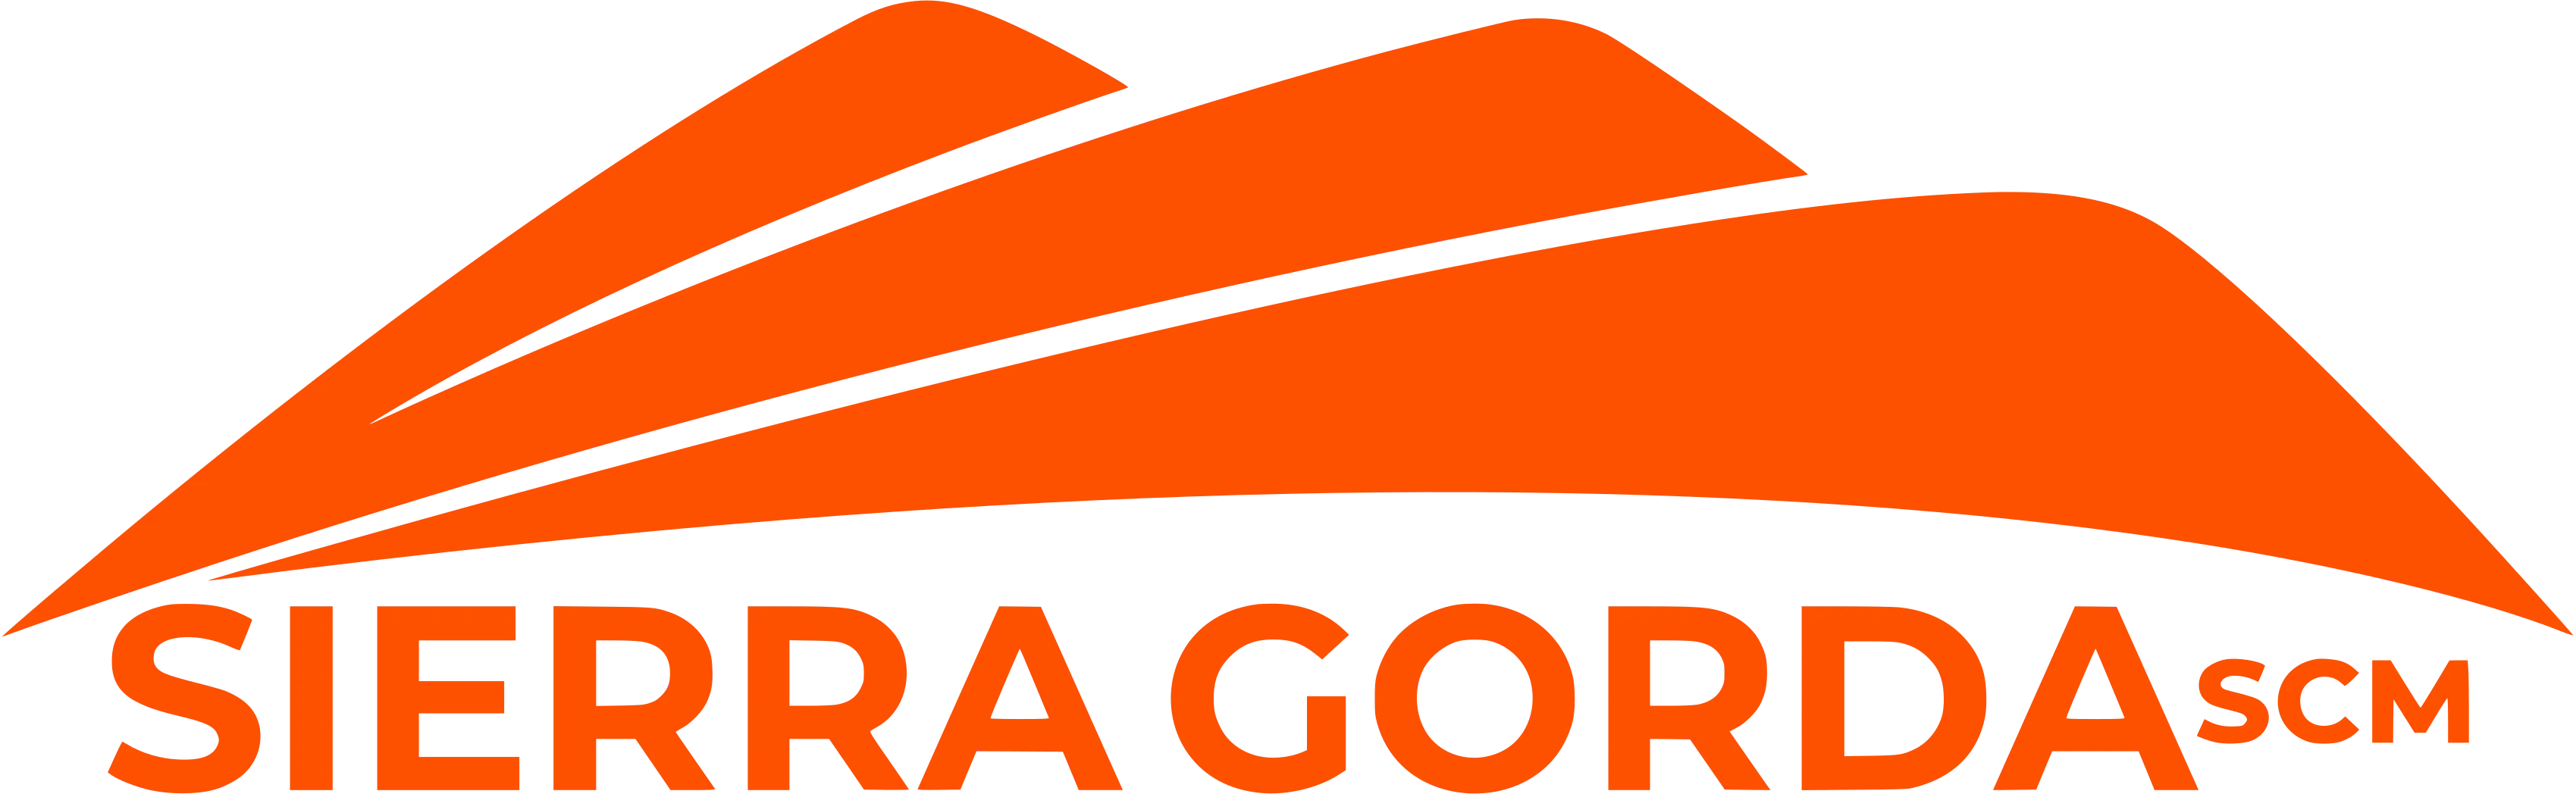 logo of the enterprise Sierra Gorda